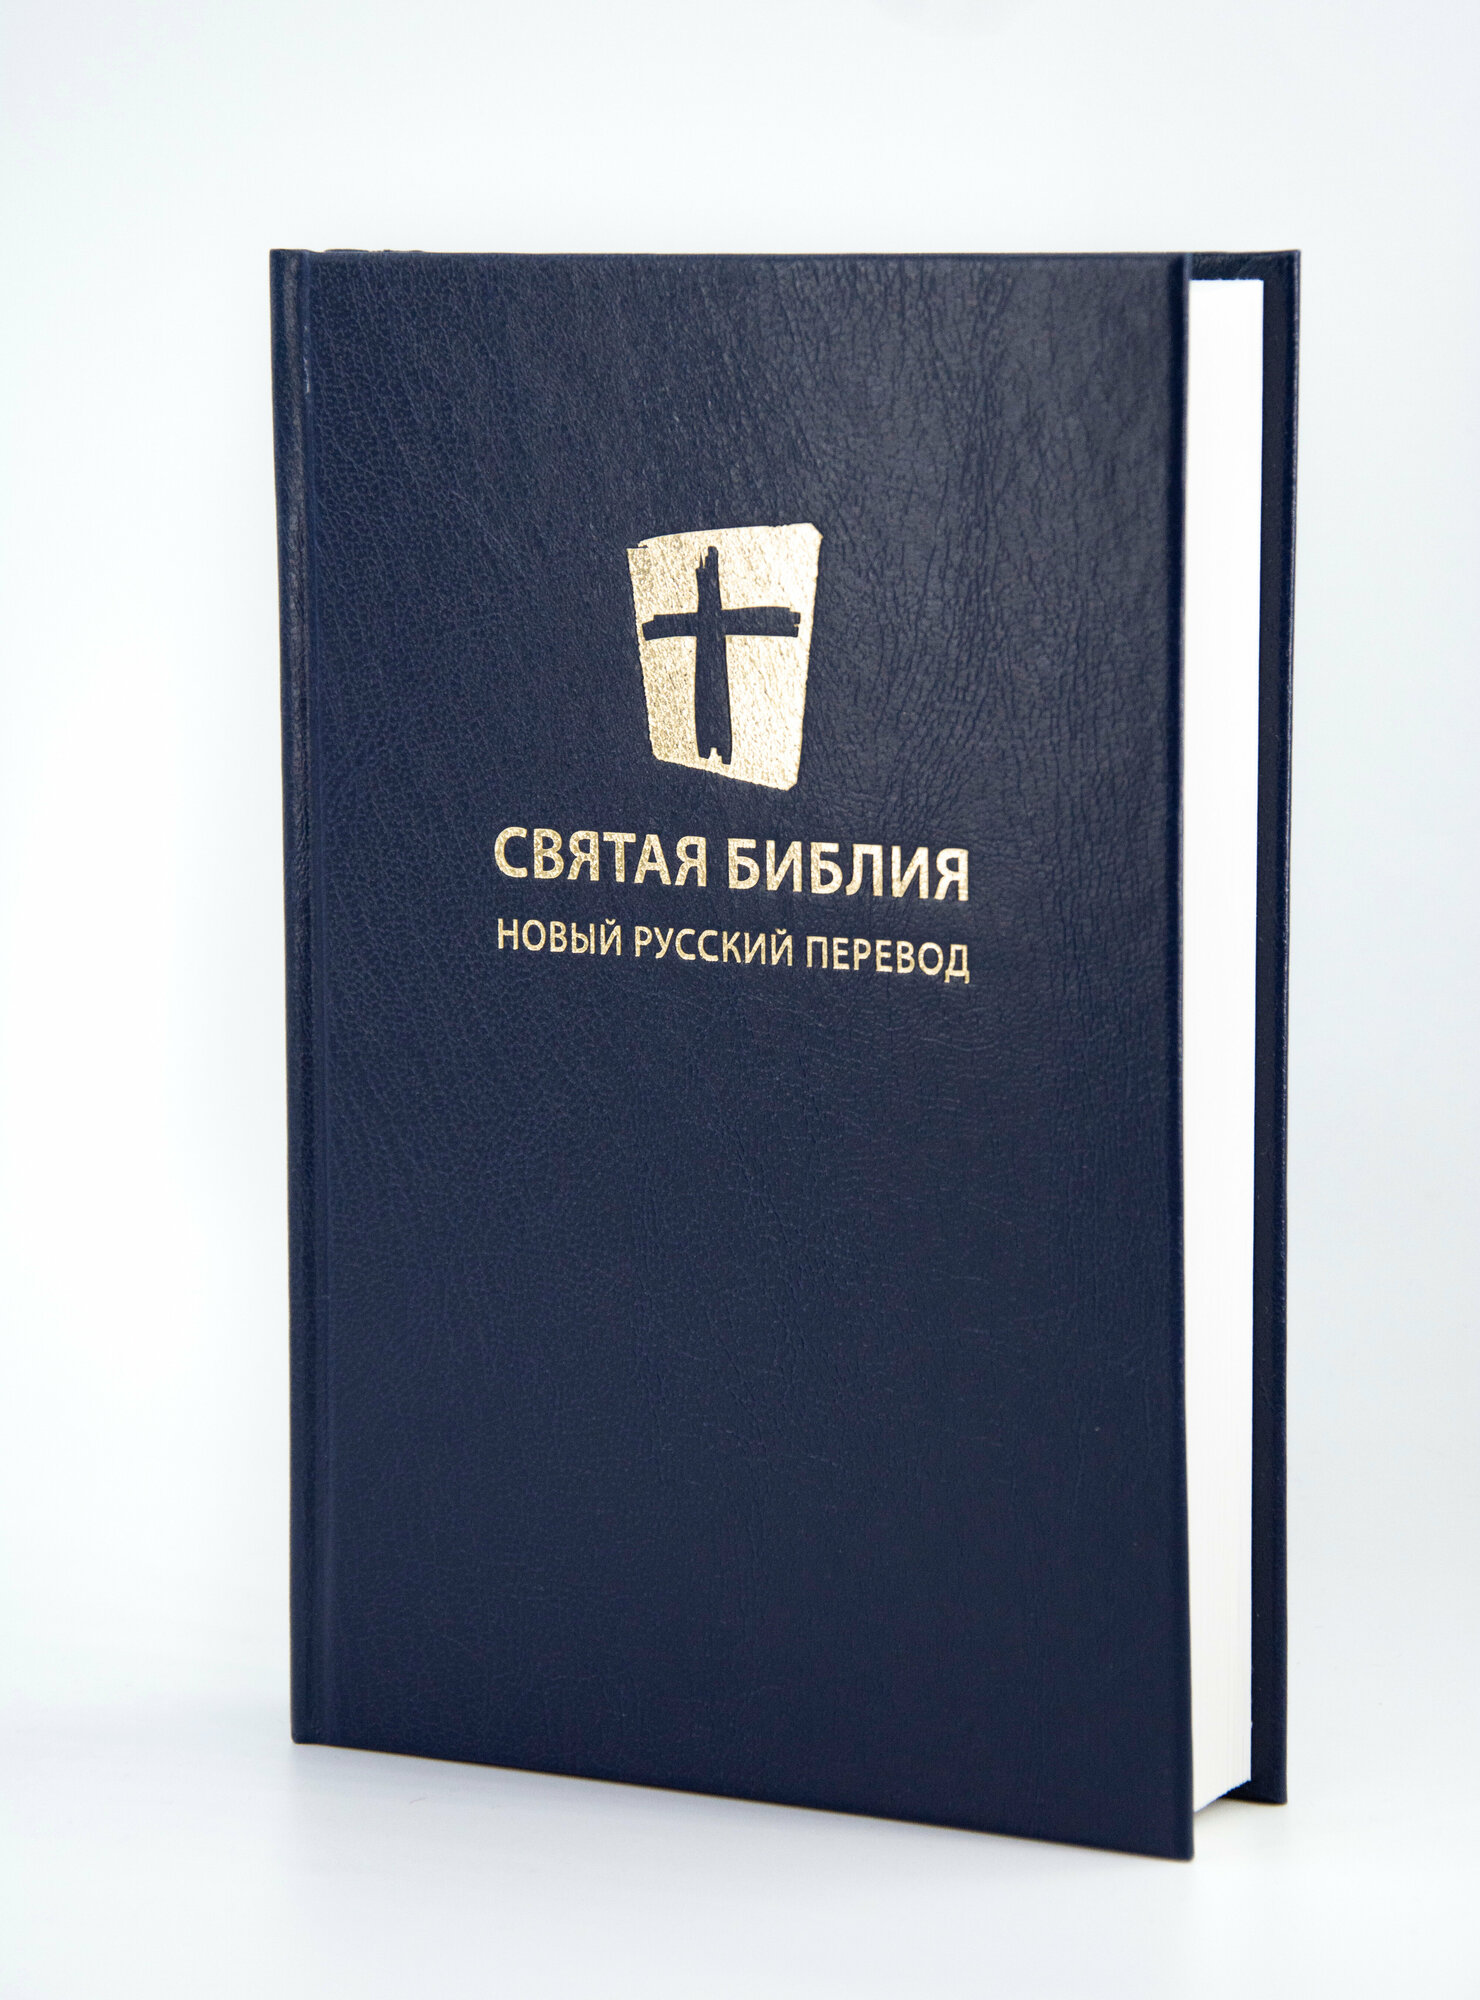 Библия в твердом переплете 140х205, синяя, новый русский перевод, МБО